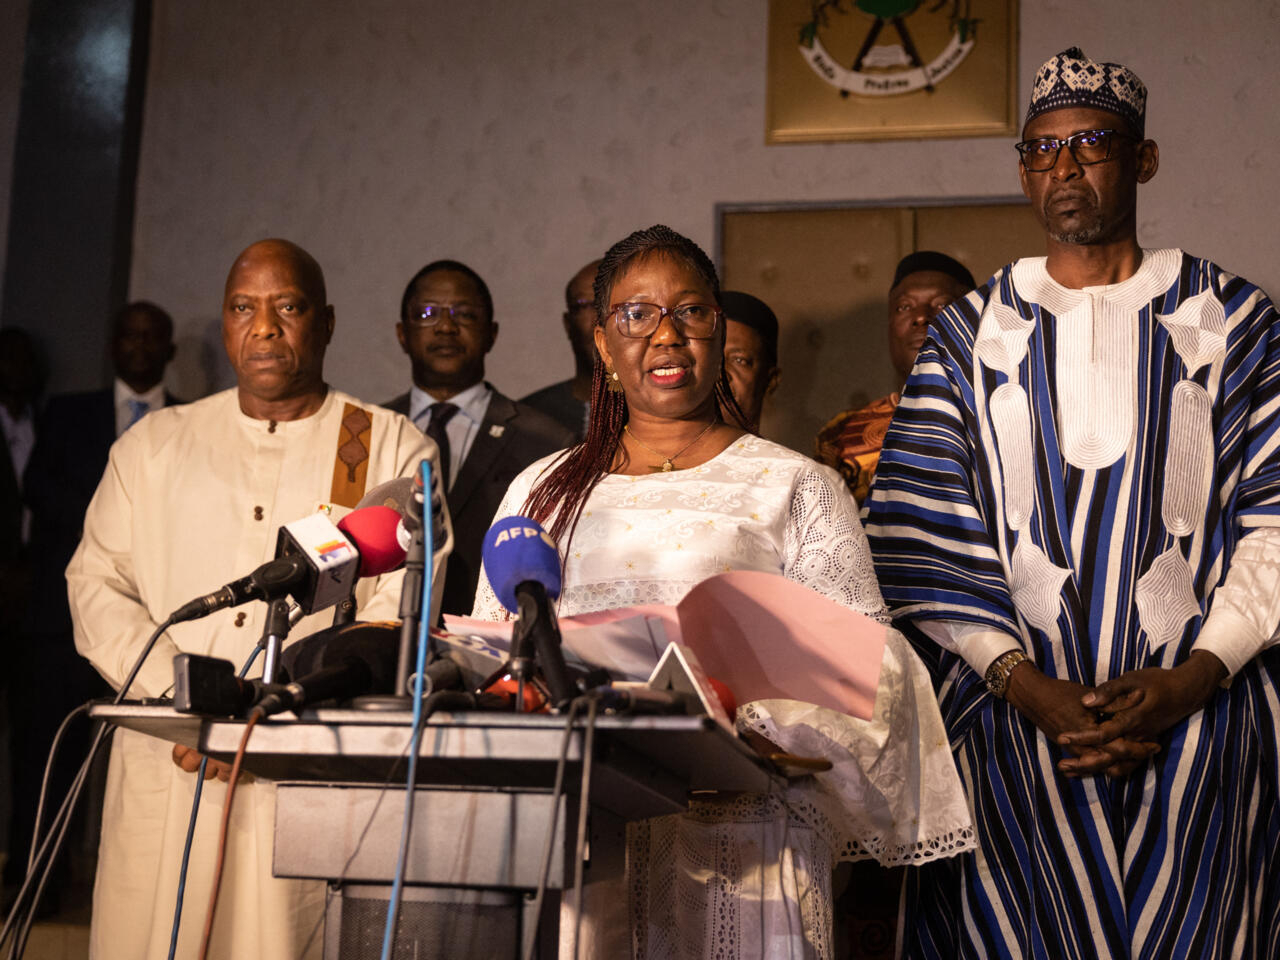 L’union sacrée entre le Burkina Faso, le Mali et la Guinée : Un triumvirat pour l’émergence d’une nouvelle Afrique